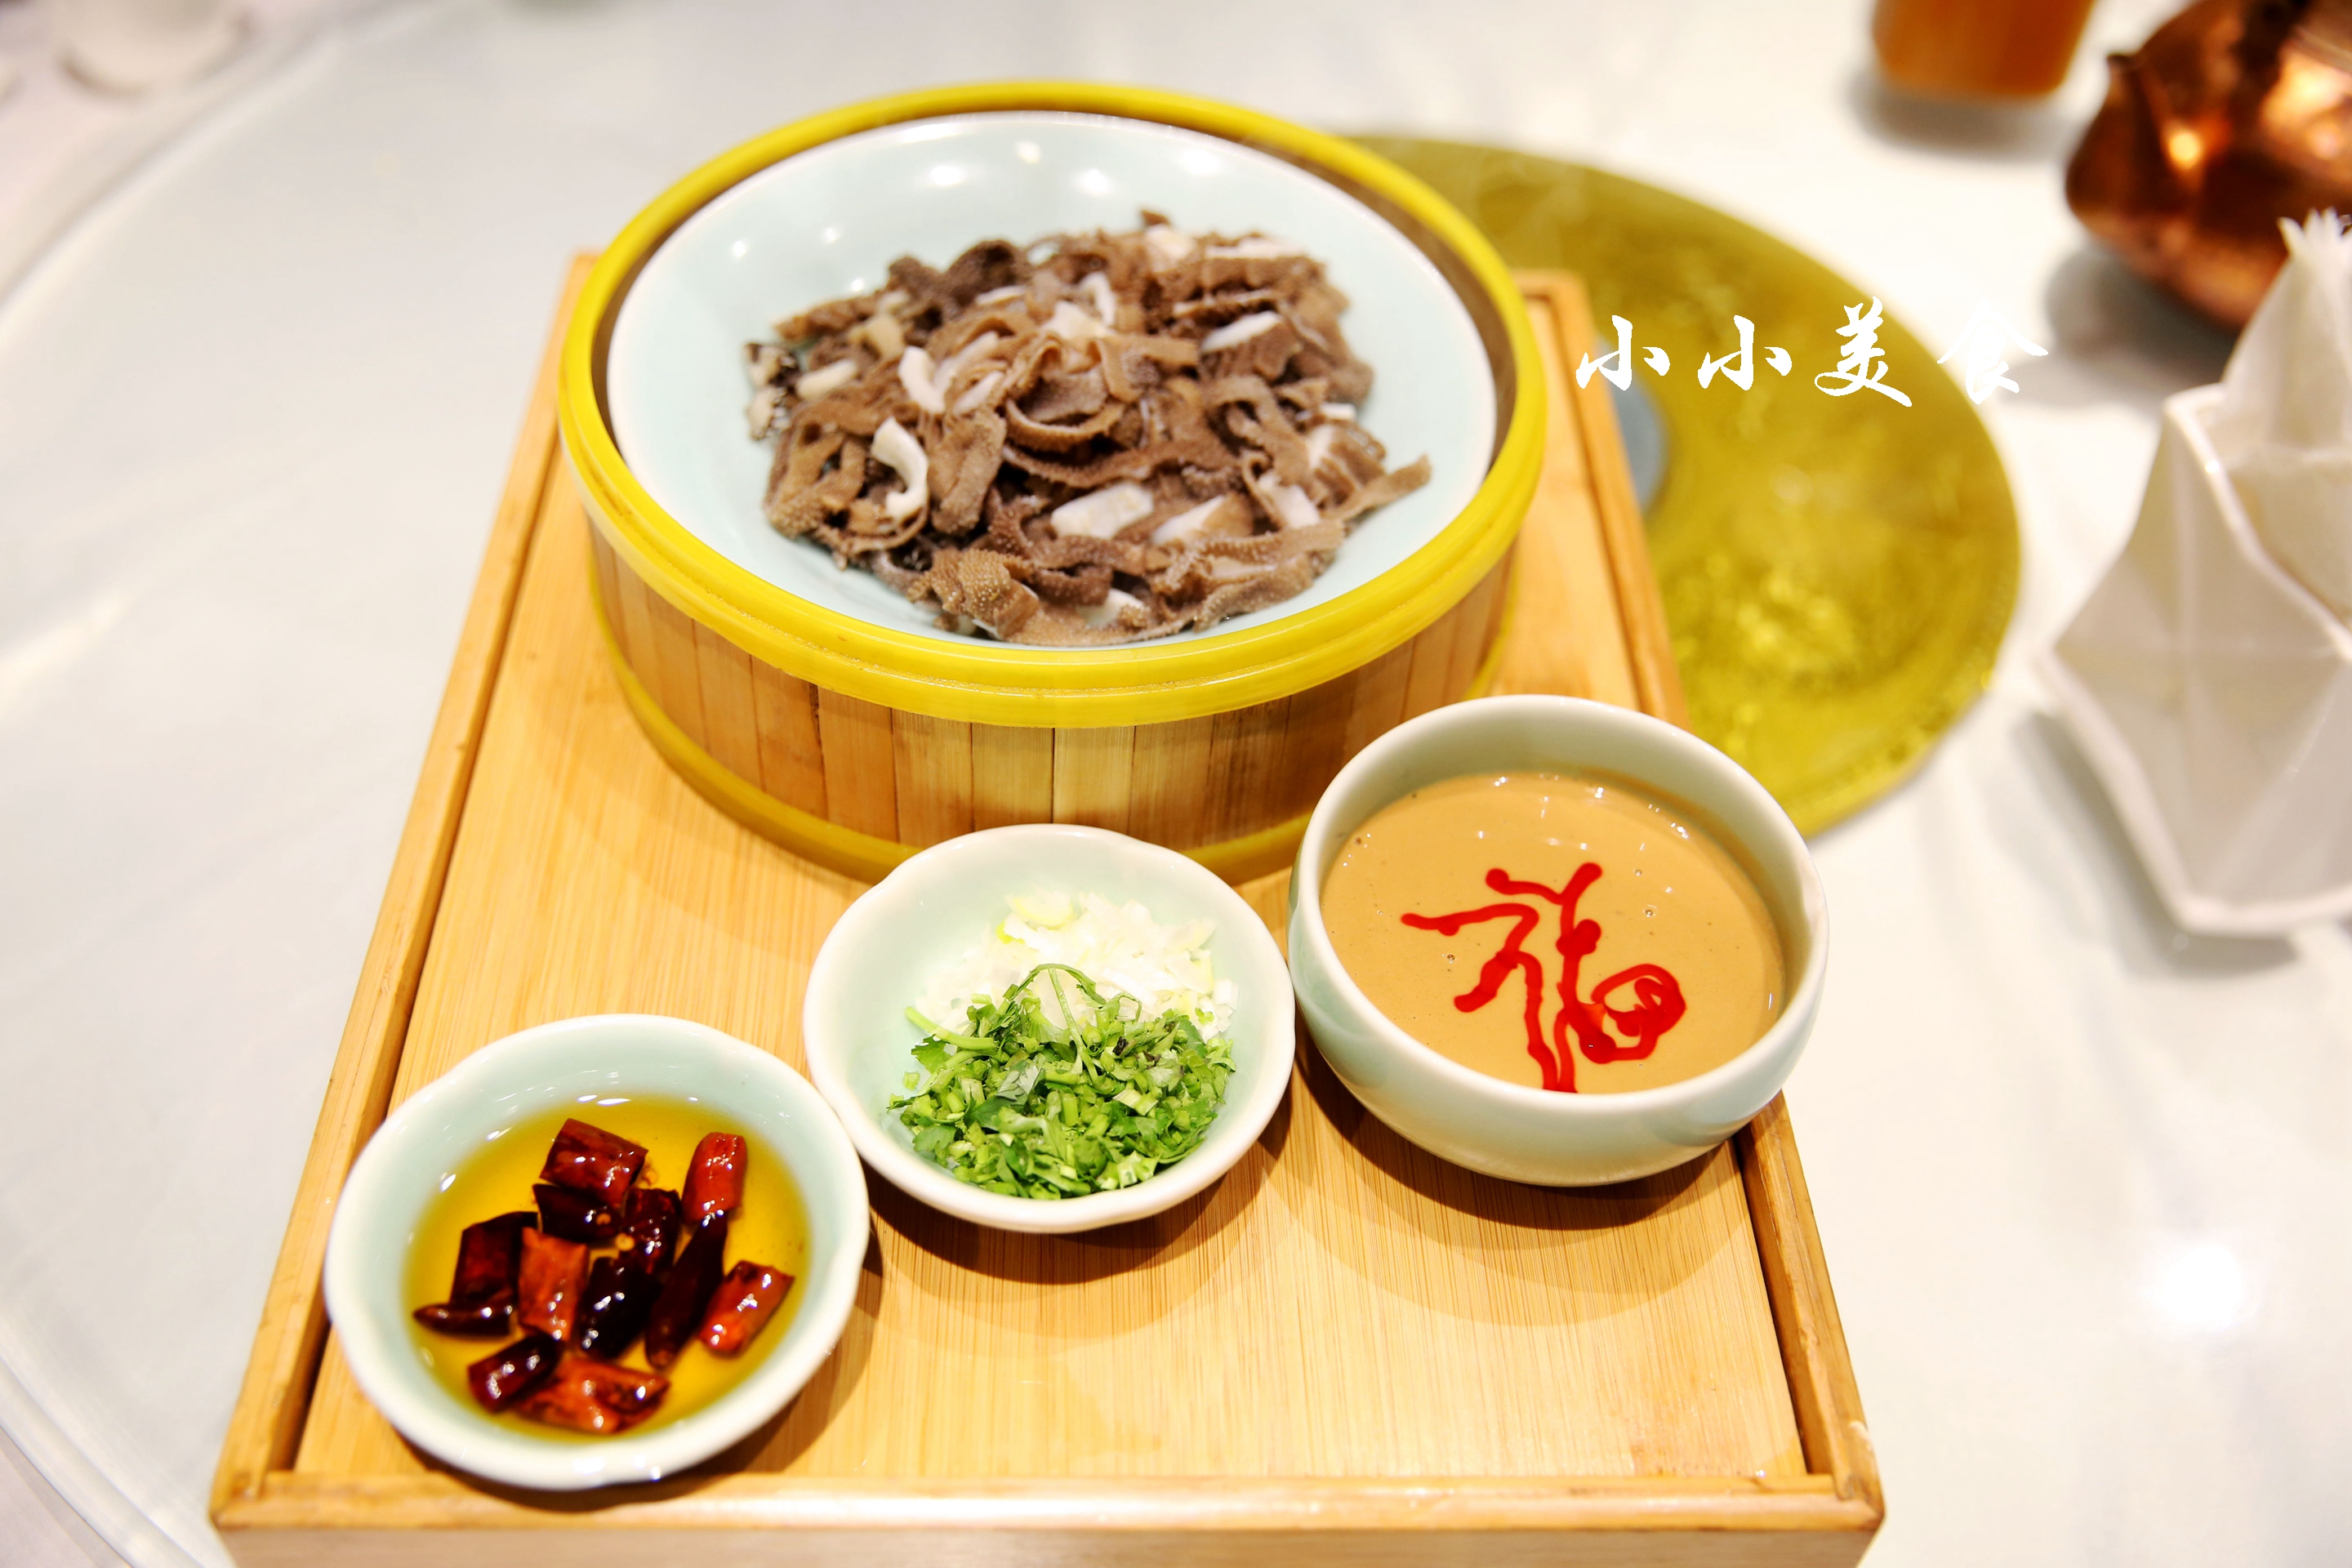 中国十大美食 中国最好吃的15种美食介绍_小吃